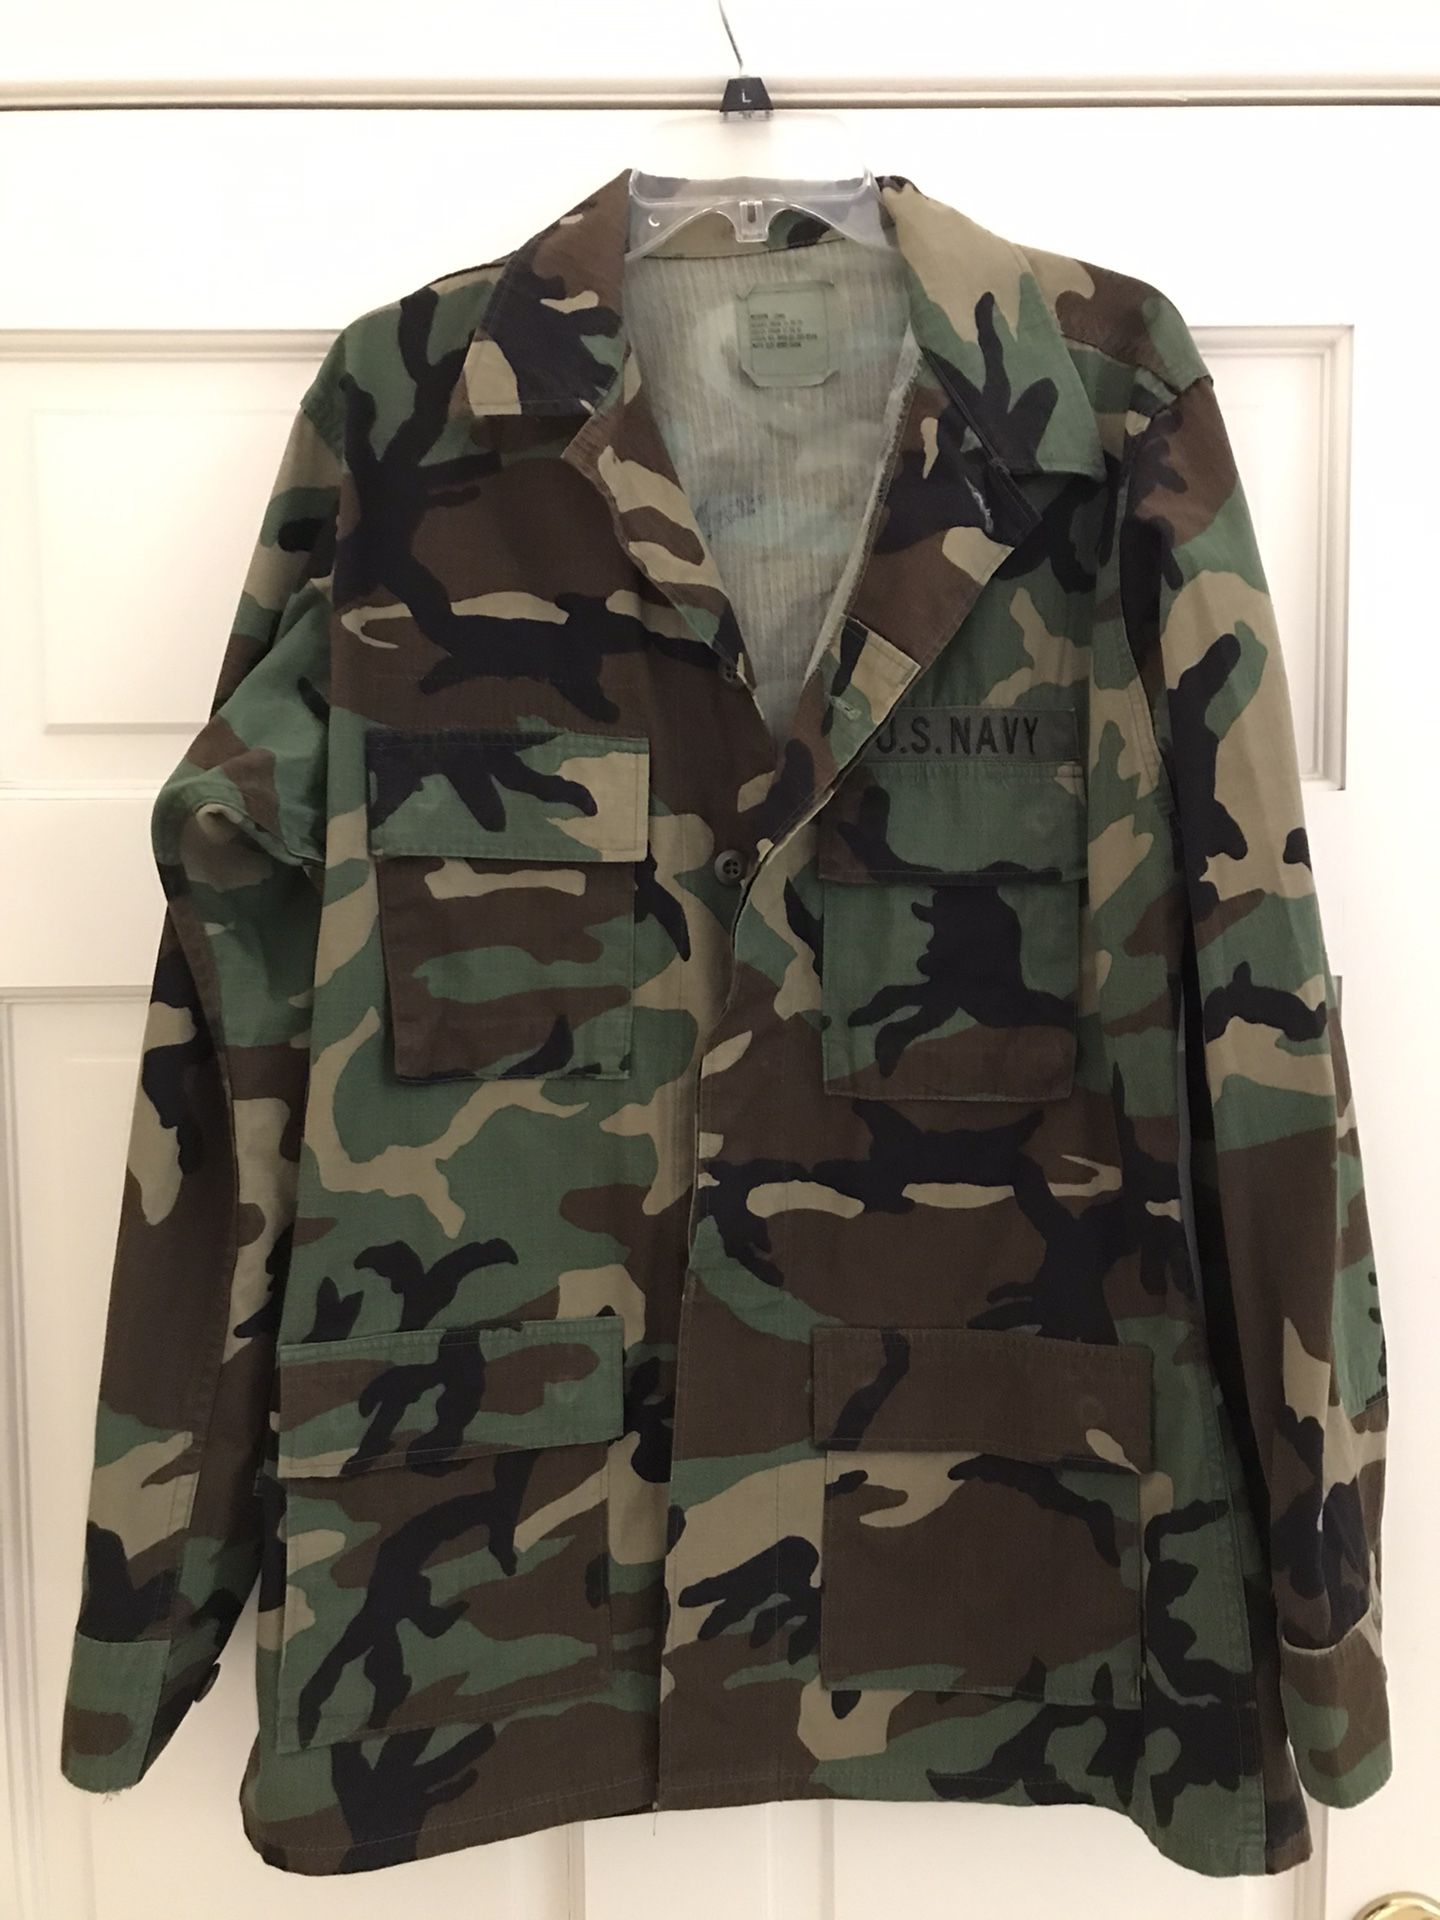 US Military Camouflage Coat/jacket/shirt - medium long